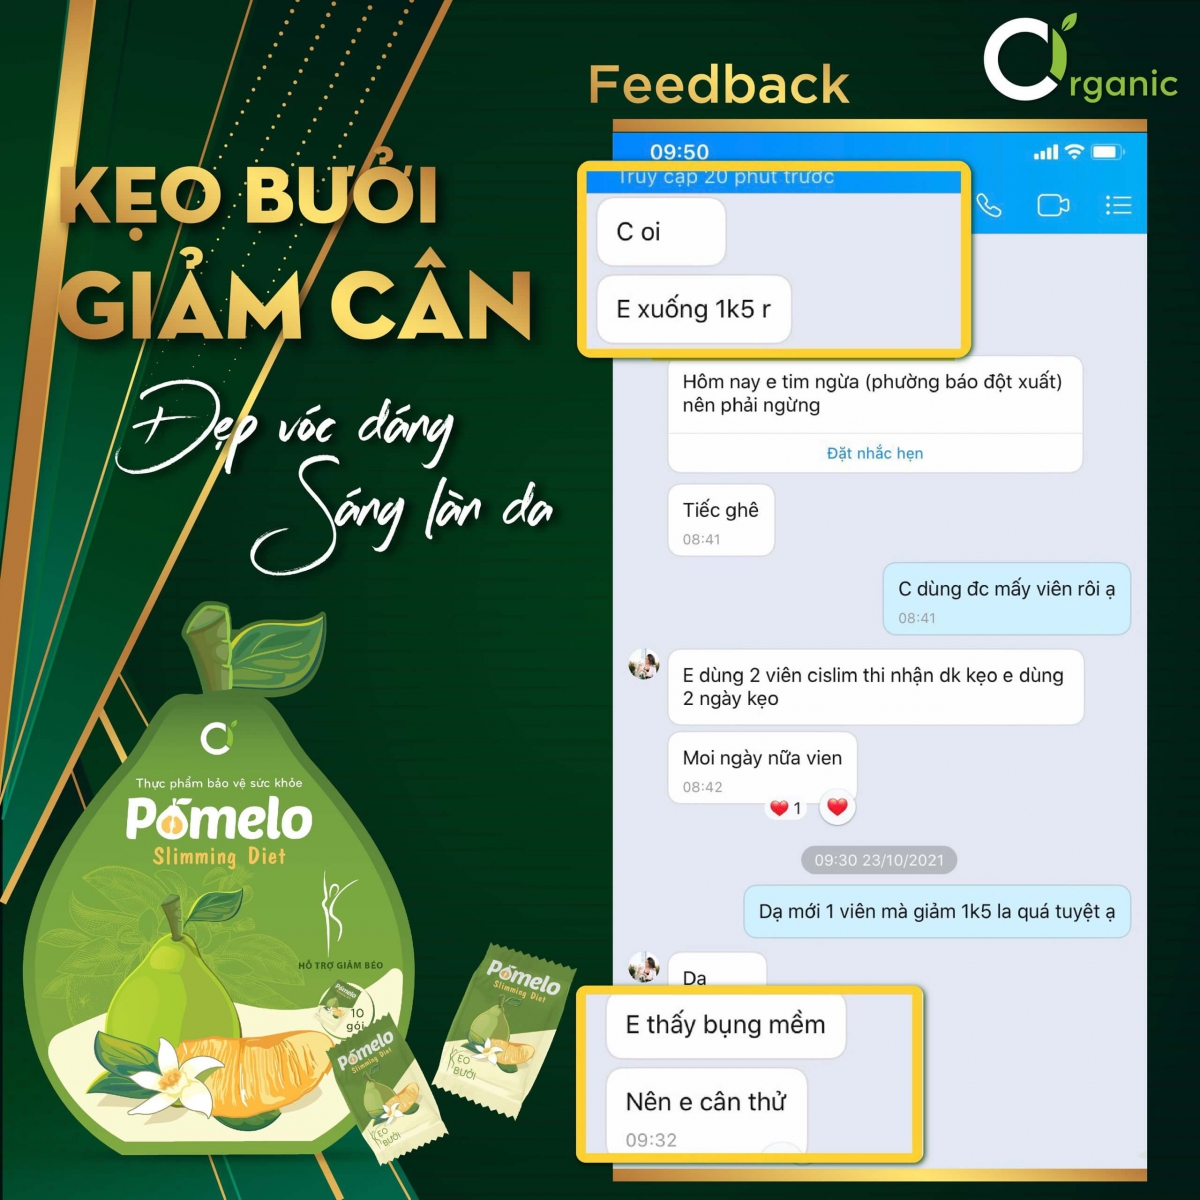 Feedback từ khách hàng đã sử dụng Kẹo bưởi giảm cân Pomelo Ciorganic